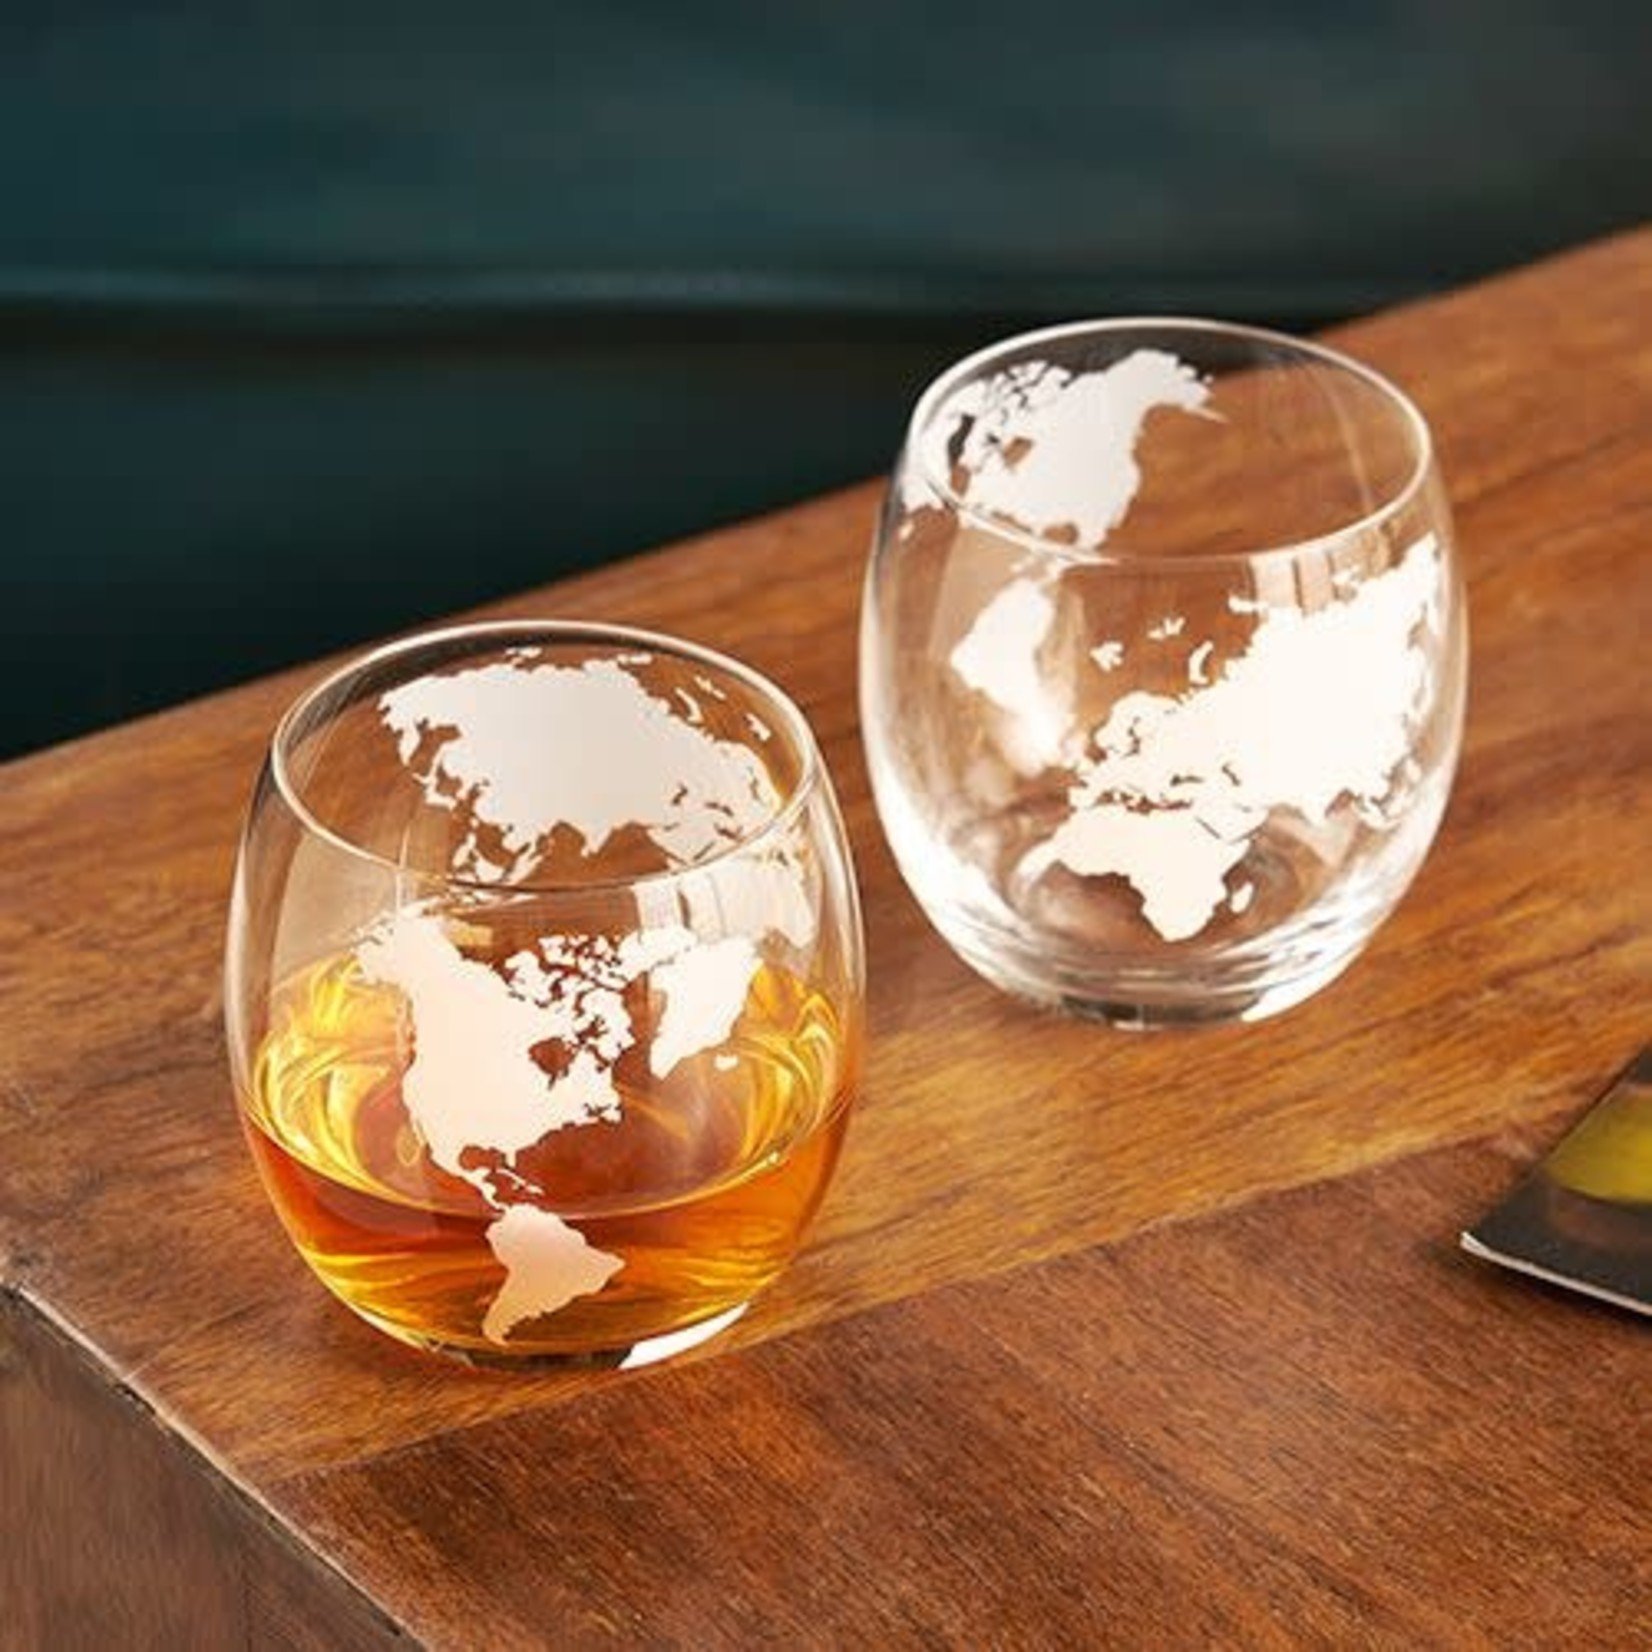 Viski Ensemble de 2 verres à Whisky - Globe